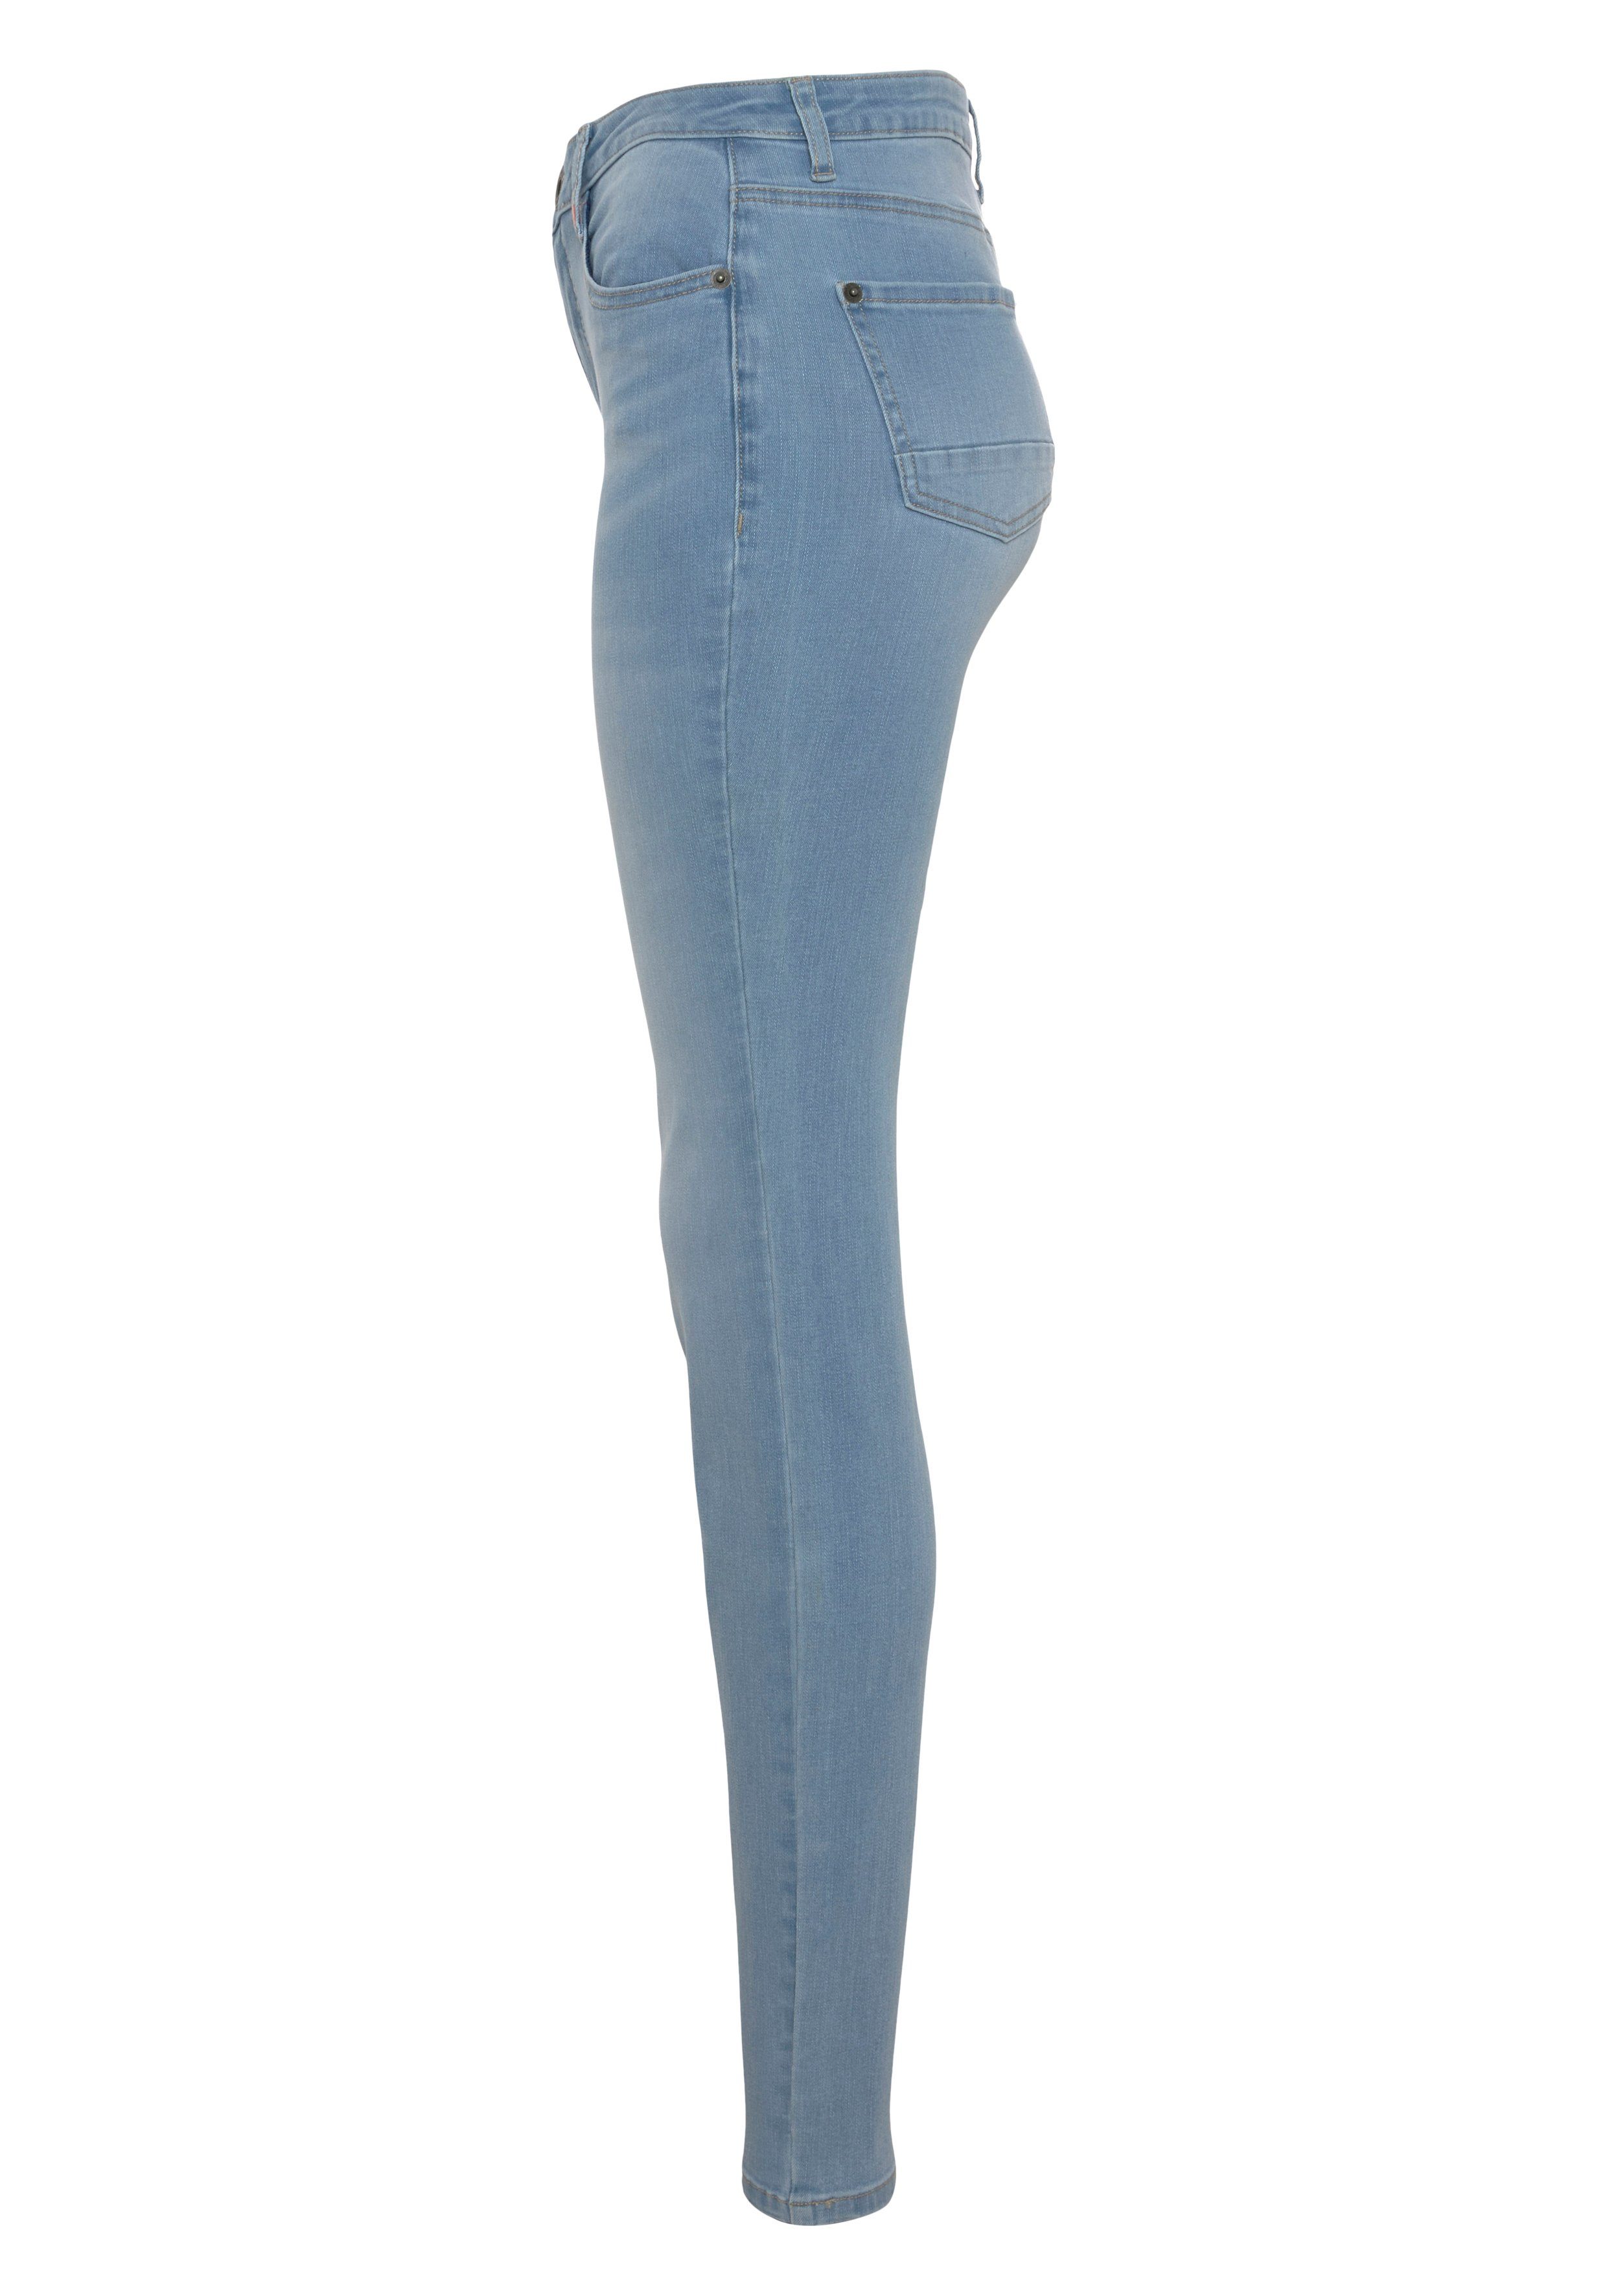 Alife & Kickin High-waist-Jeans KOLLEKTION used NEUE Slim-Fit NolaAK light blue